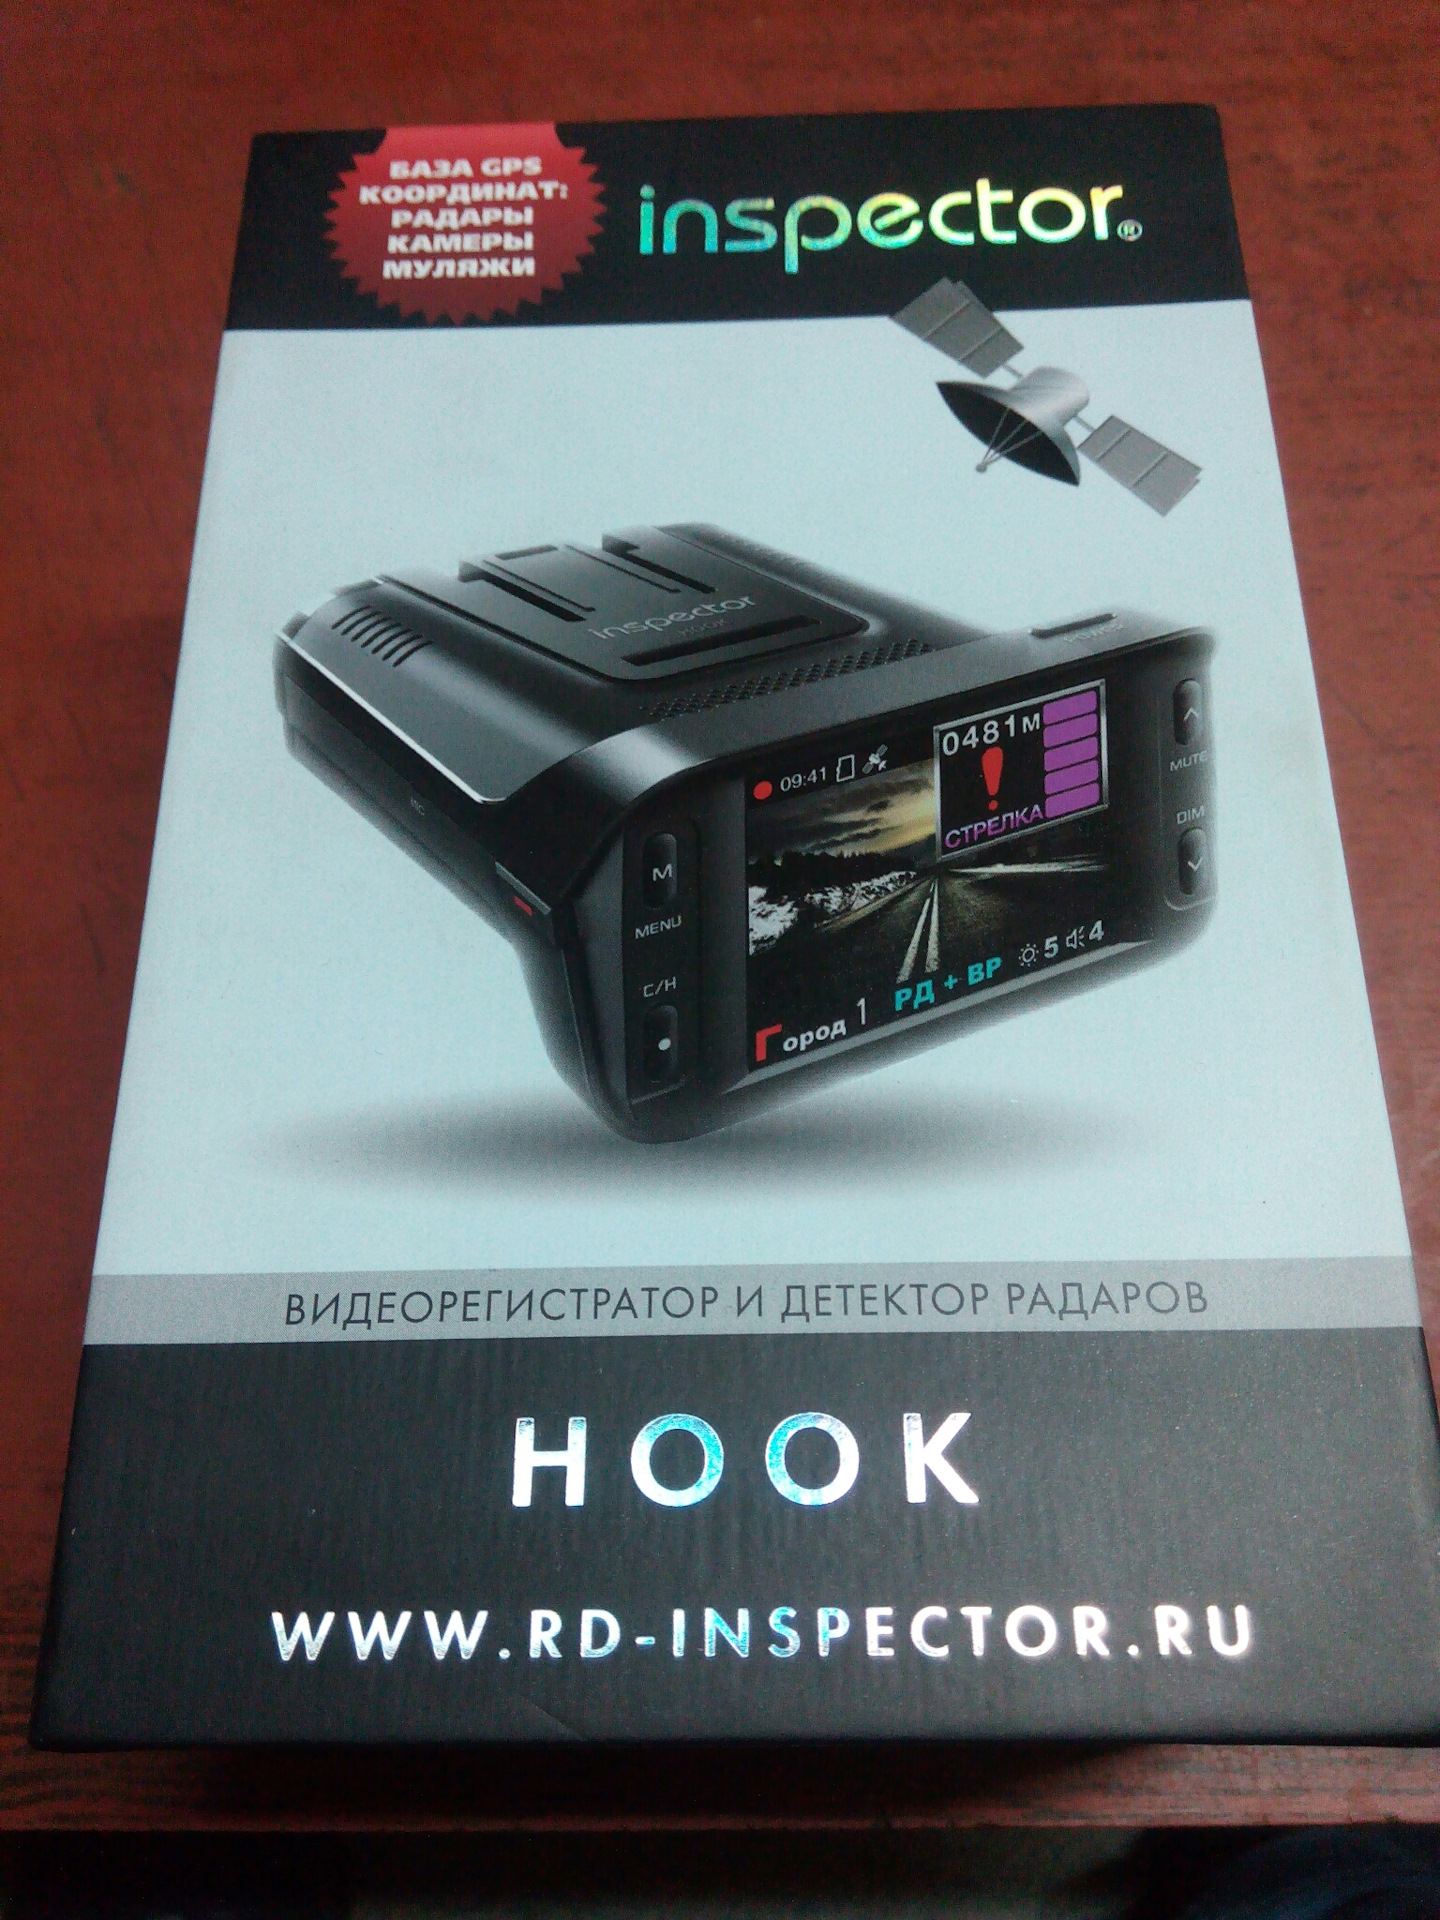 Регистратор inspector. Инспектор видеорегистратор и антирадар. Антирадар с видеорегистратором инспектор. Инспектор Hook.